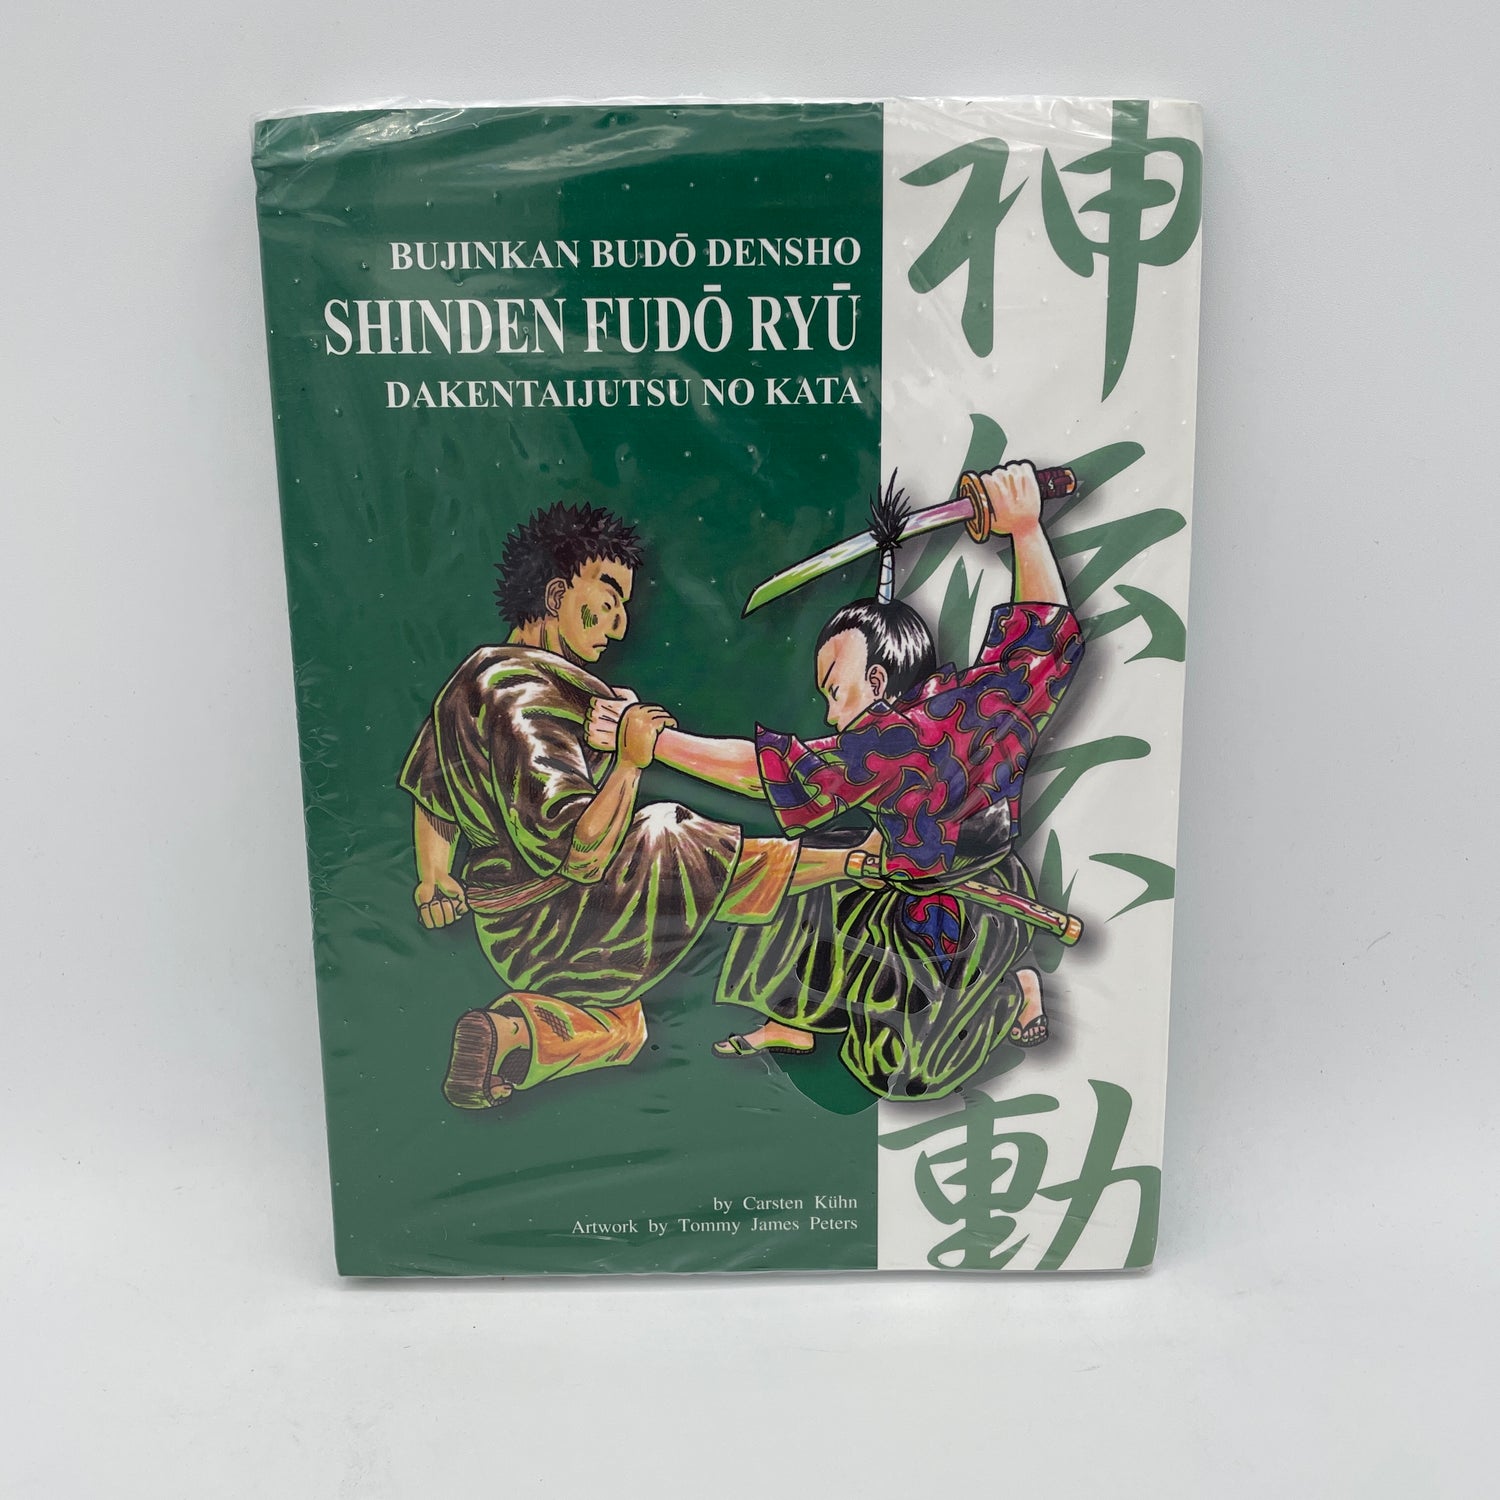 Bujinkan Budo Densho Book 5 Shinden Fudo Ryu Dakentaijutsu by Carsten Kuhn